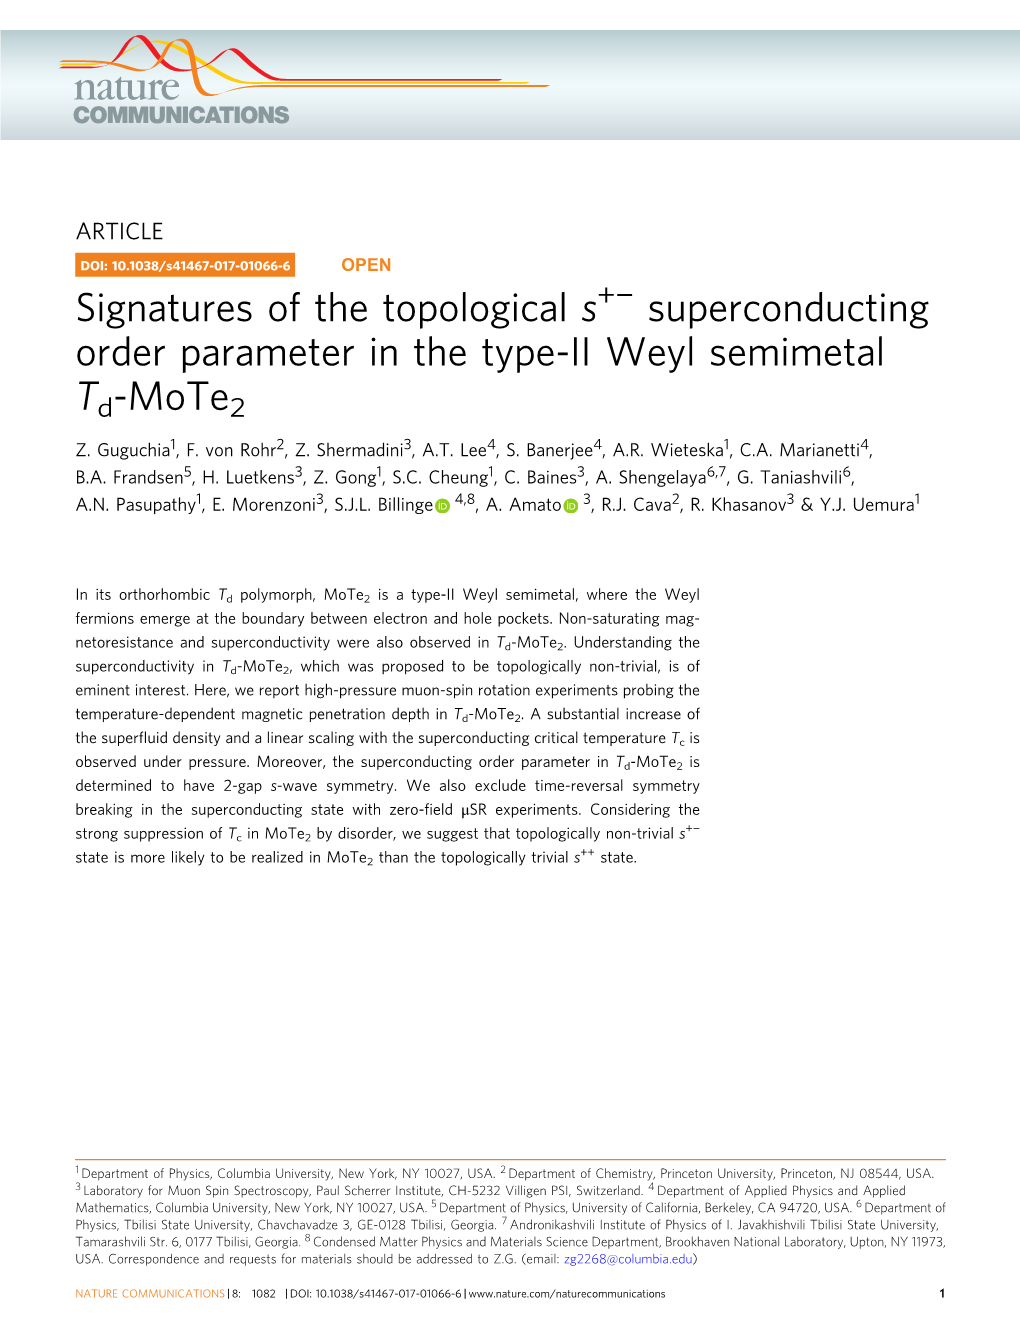 Superconducting Order Parameter in the Type-II Weyl Semimetal Td-Mote2